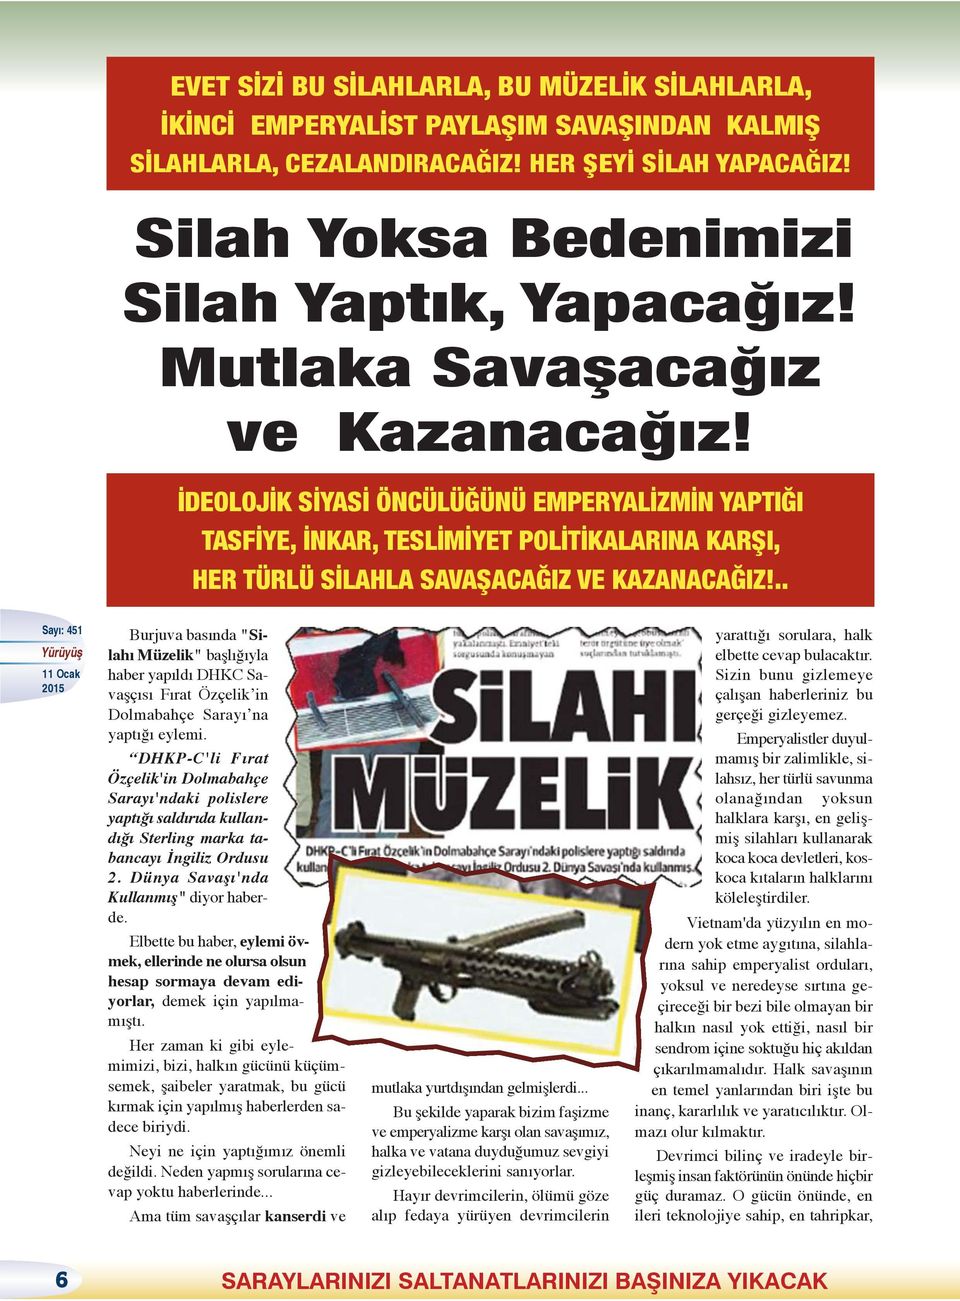 .. Burjuva basında "Silahı Müzelik" başlığıyla haber yapıldı DHKC Savaşçısı Fırat Özçelik in Dolmabahçe Sarayı na yaptığı eylemi.